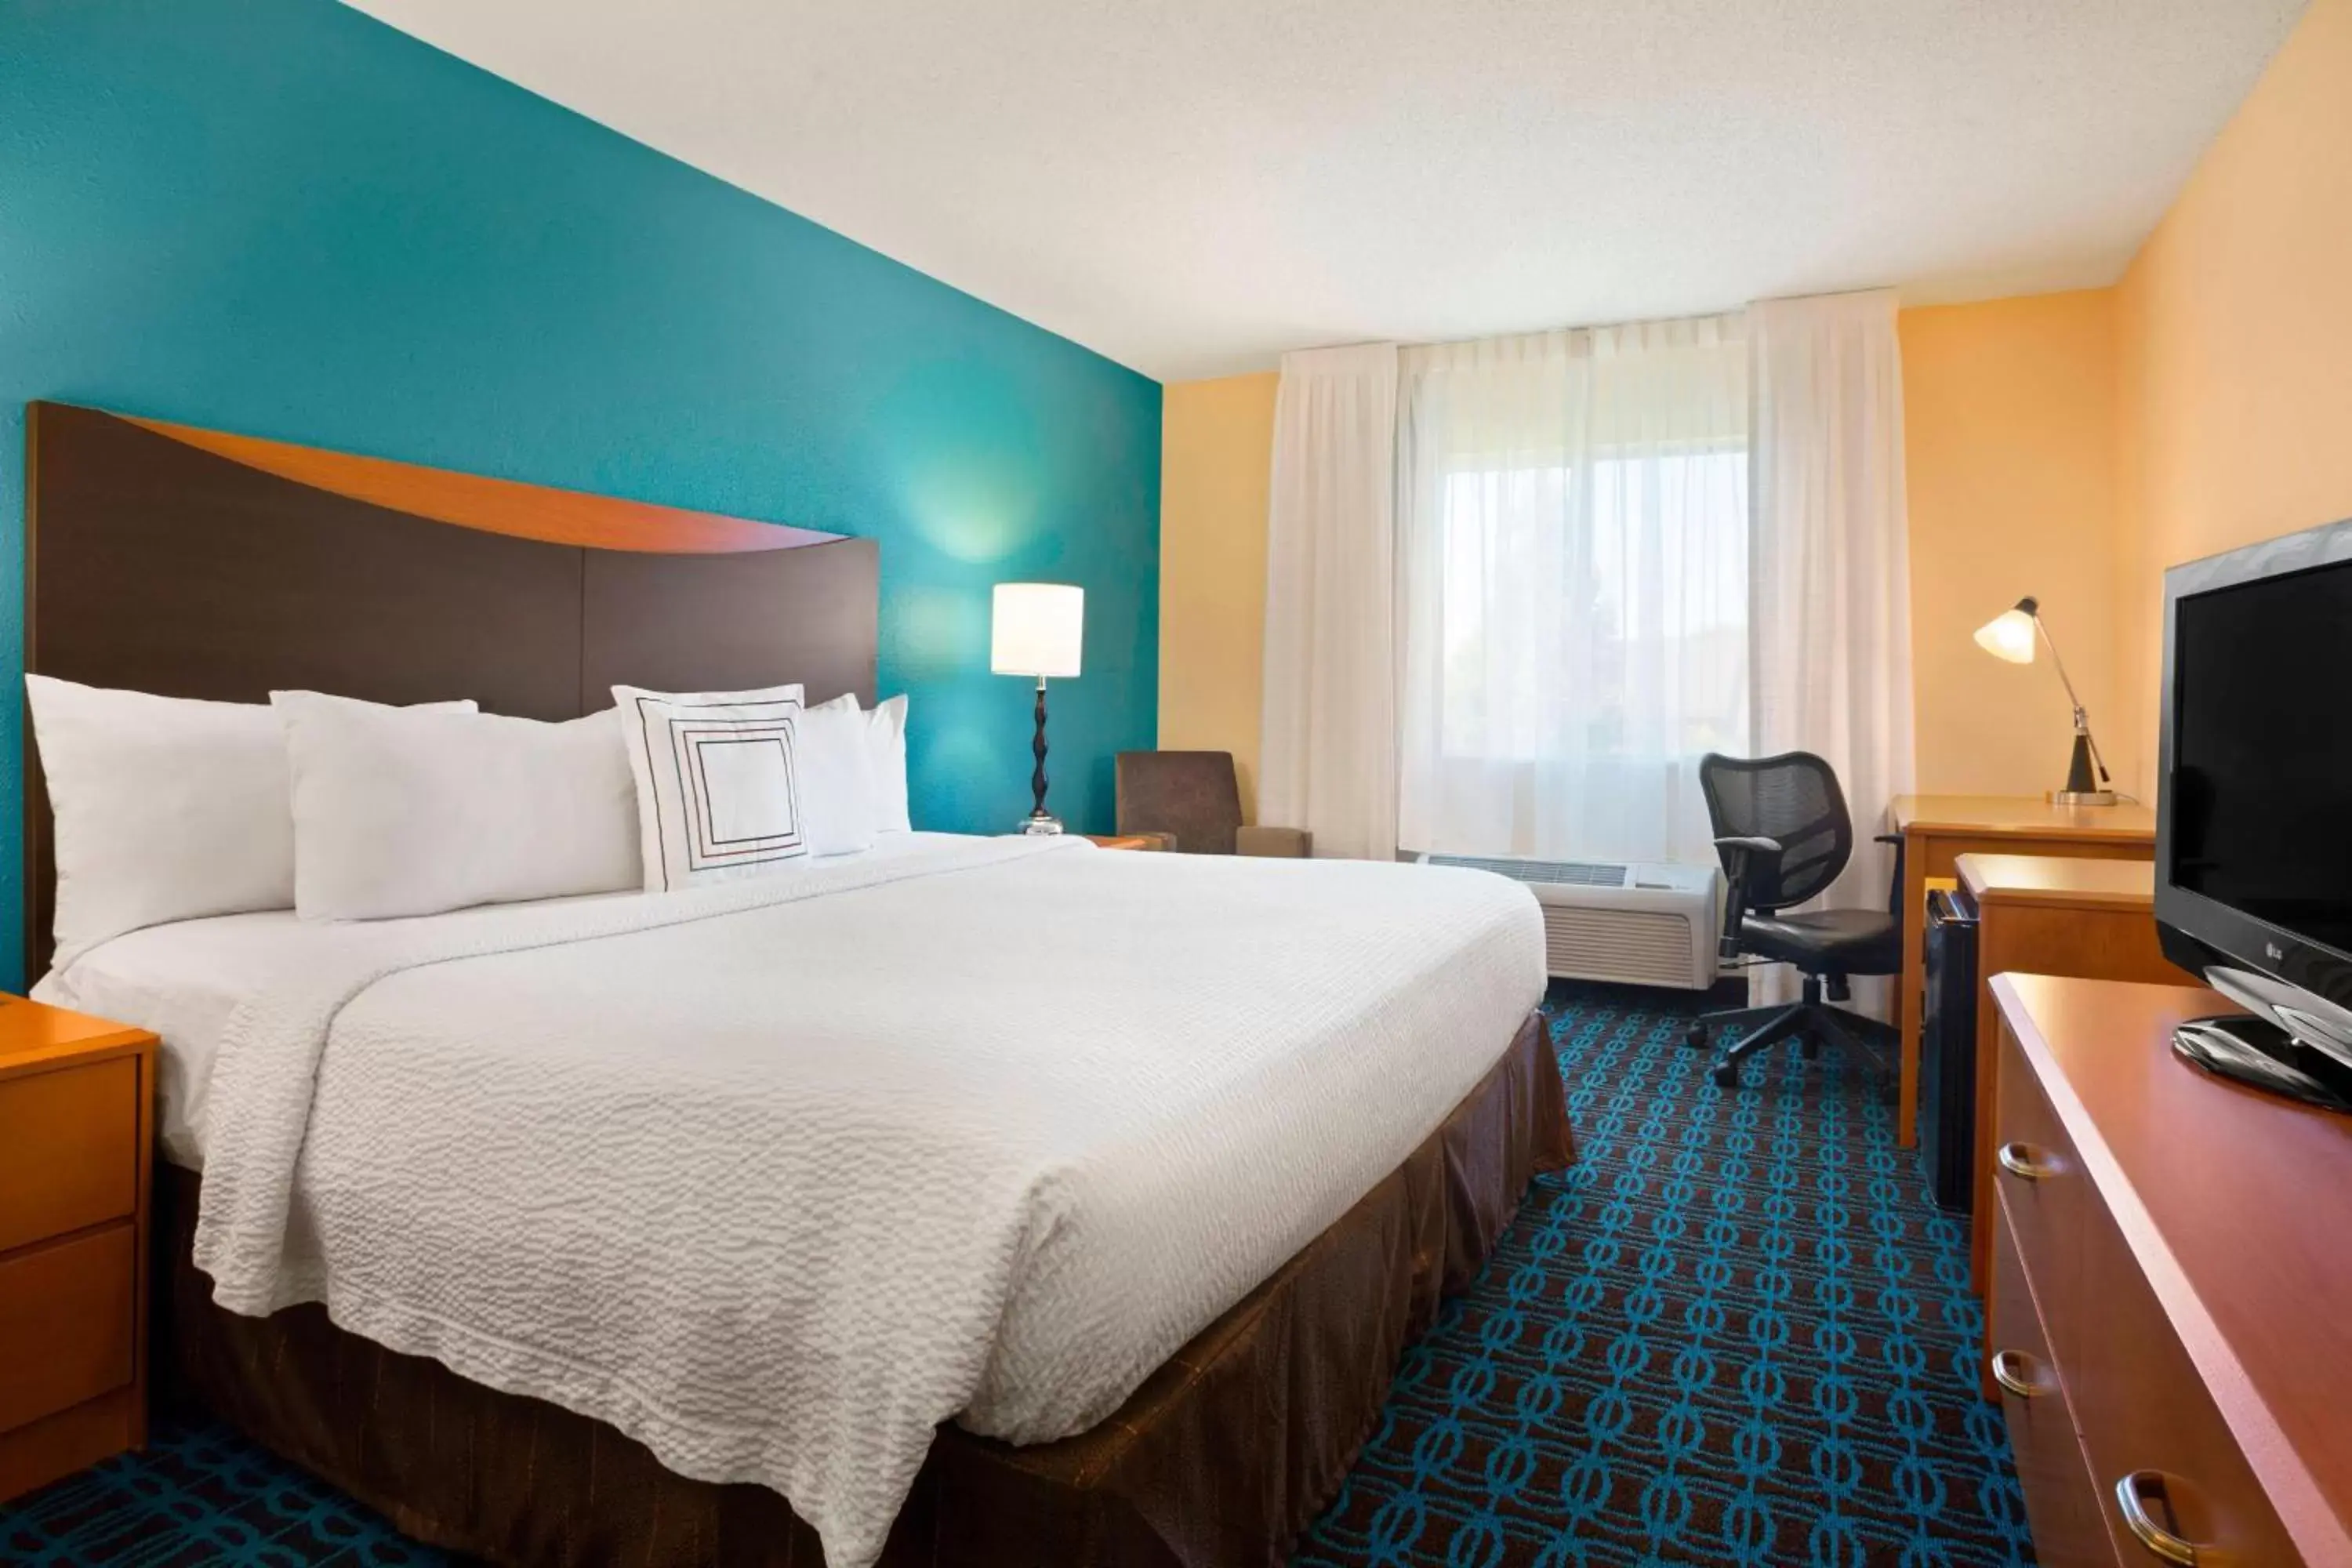 King Room in Fairfield Inn & Suites Minneapolis-St. Paul Airport